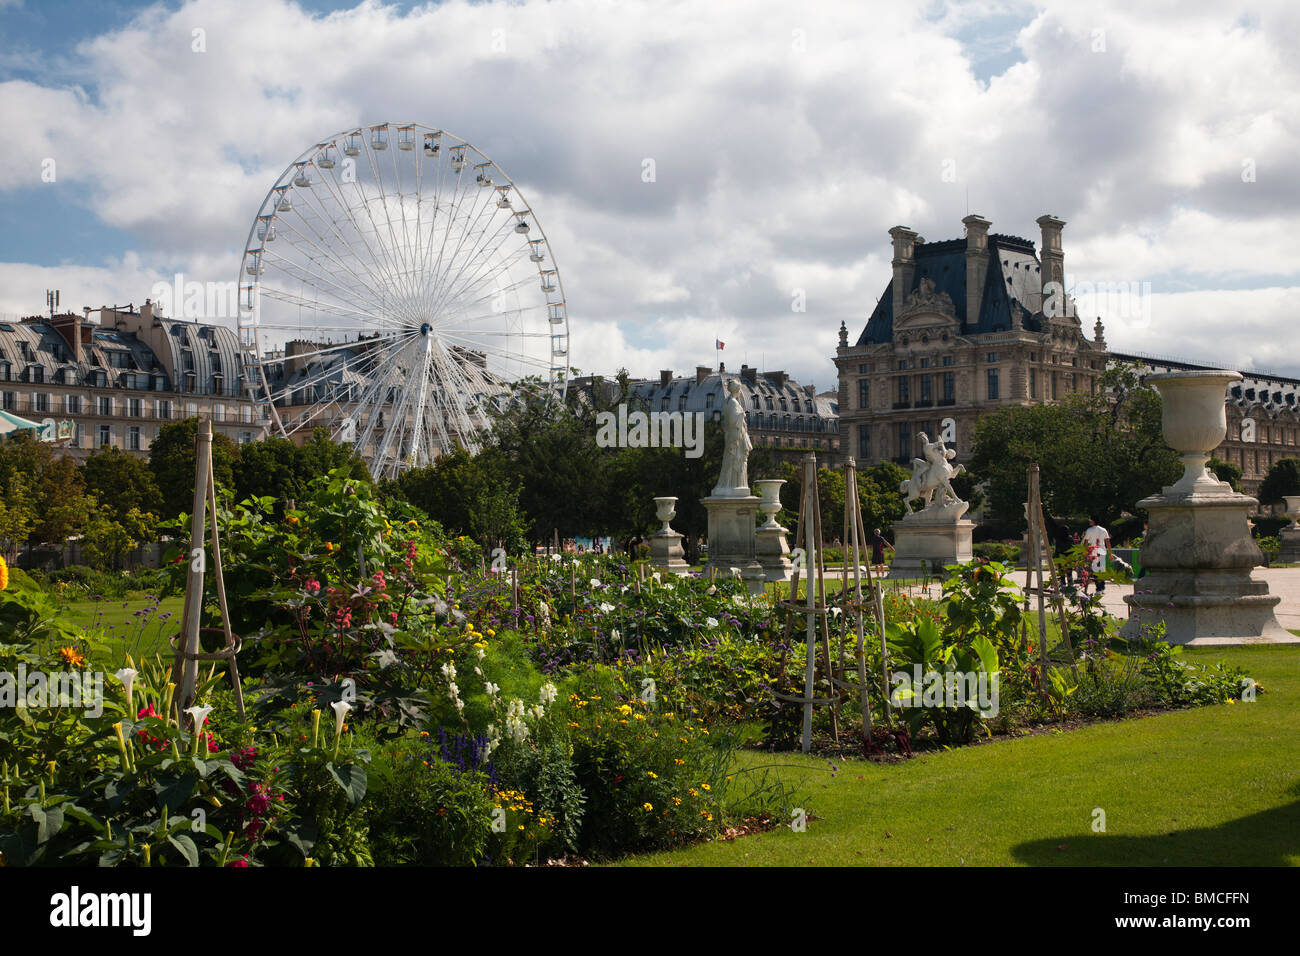 Carousel, sculptures fleurs colorées de jardin des Tuileries Musée Du Louvre Paris France été printemps aile Richelieu avant fond ciel lumineux lumière Banque D'Images